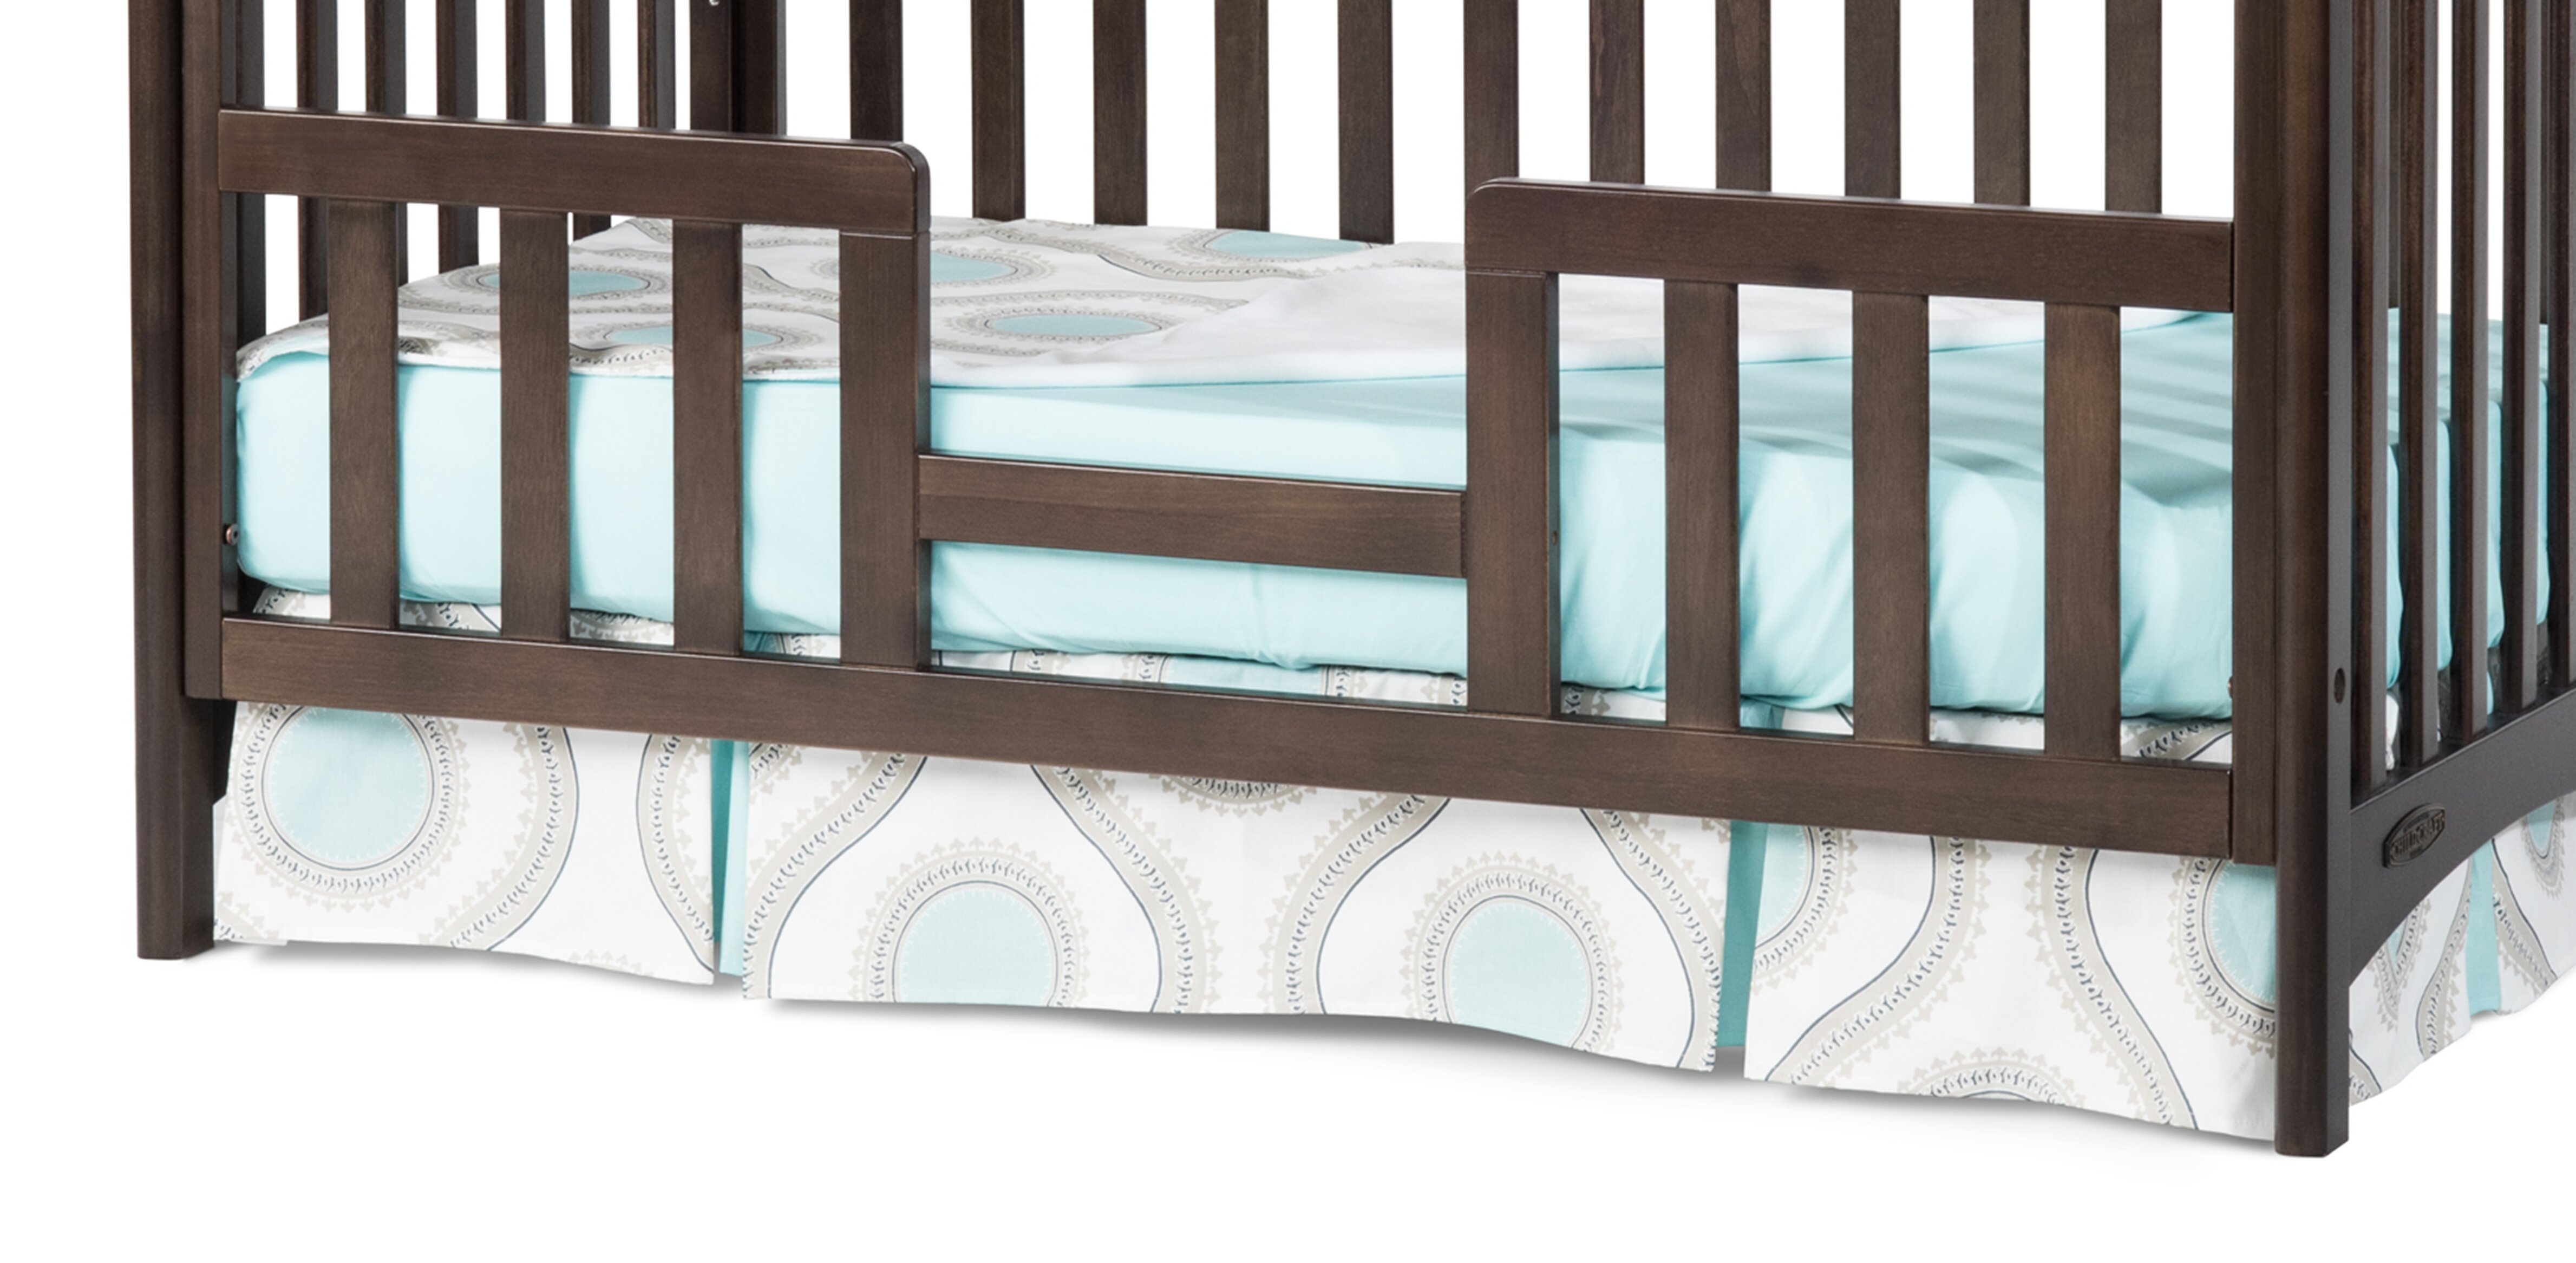 child craft camden bed rails